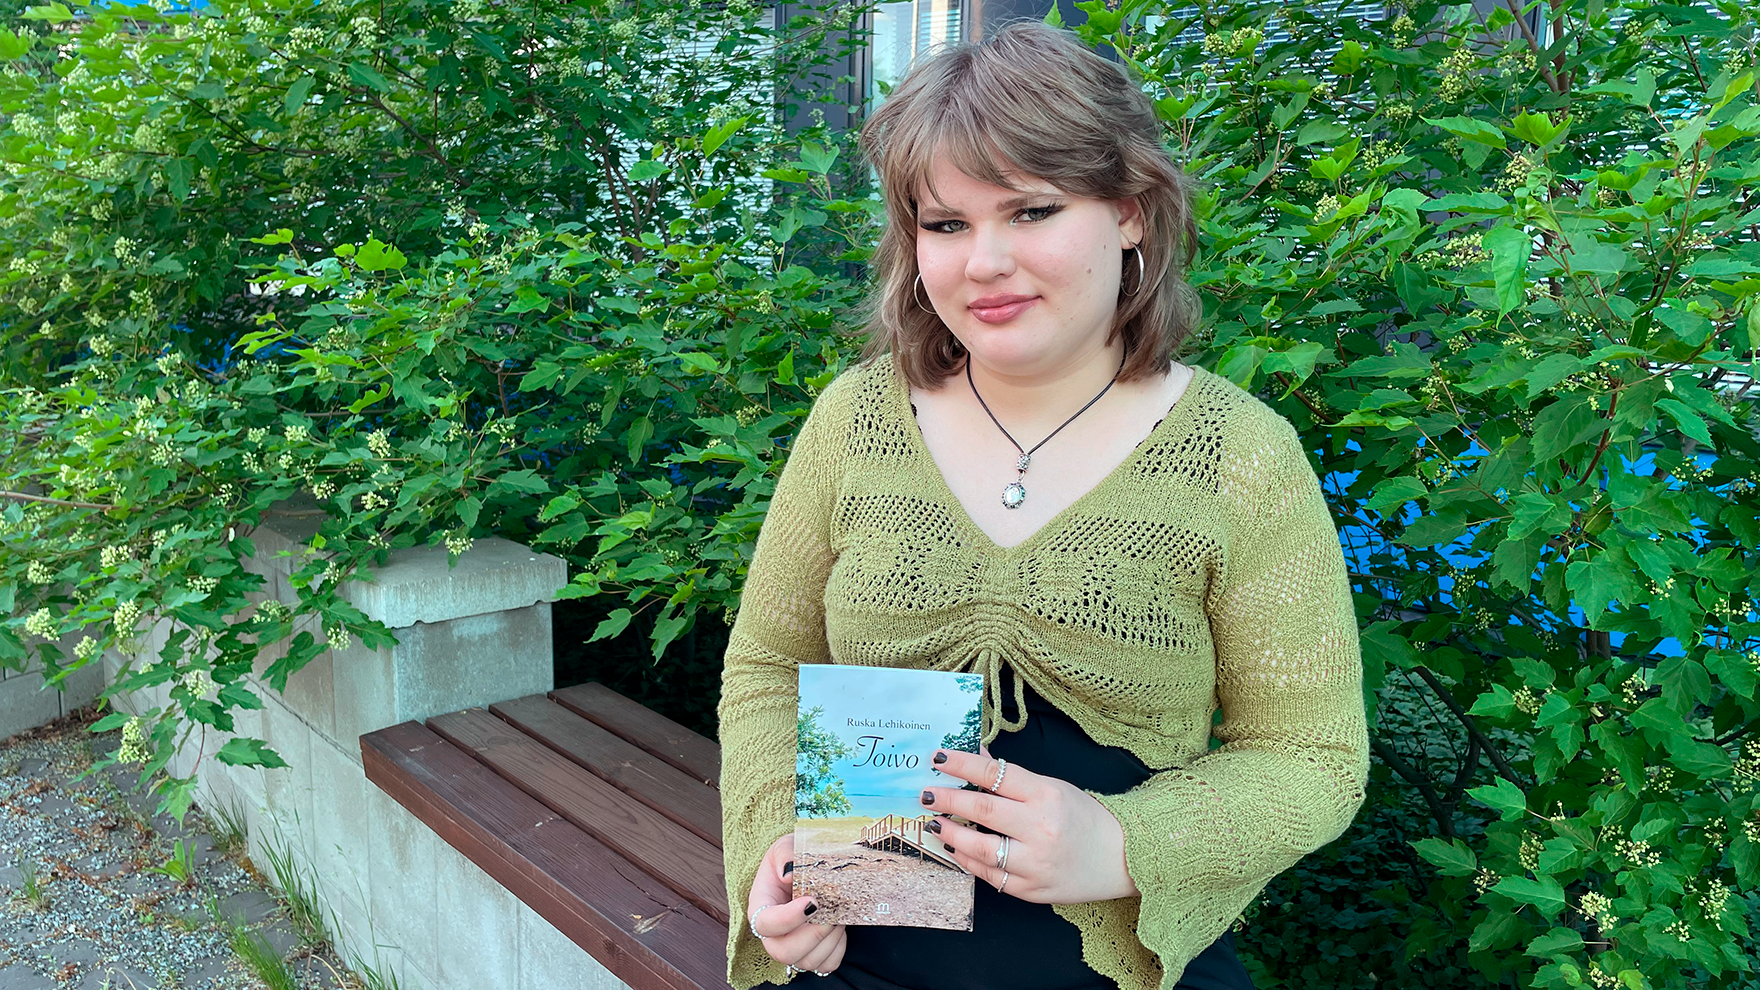 Kuvassa Ruska Lehikoinen istuu penkillä ja pitelee käsissään Toivo-kirjaa, jonka hän on kirjoittanut. Taustalla on vihreitä pensaita.